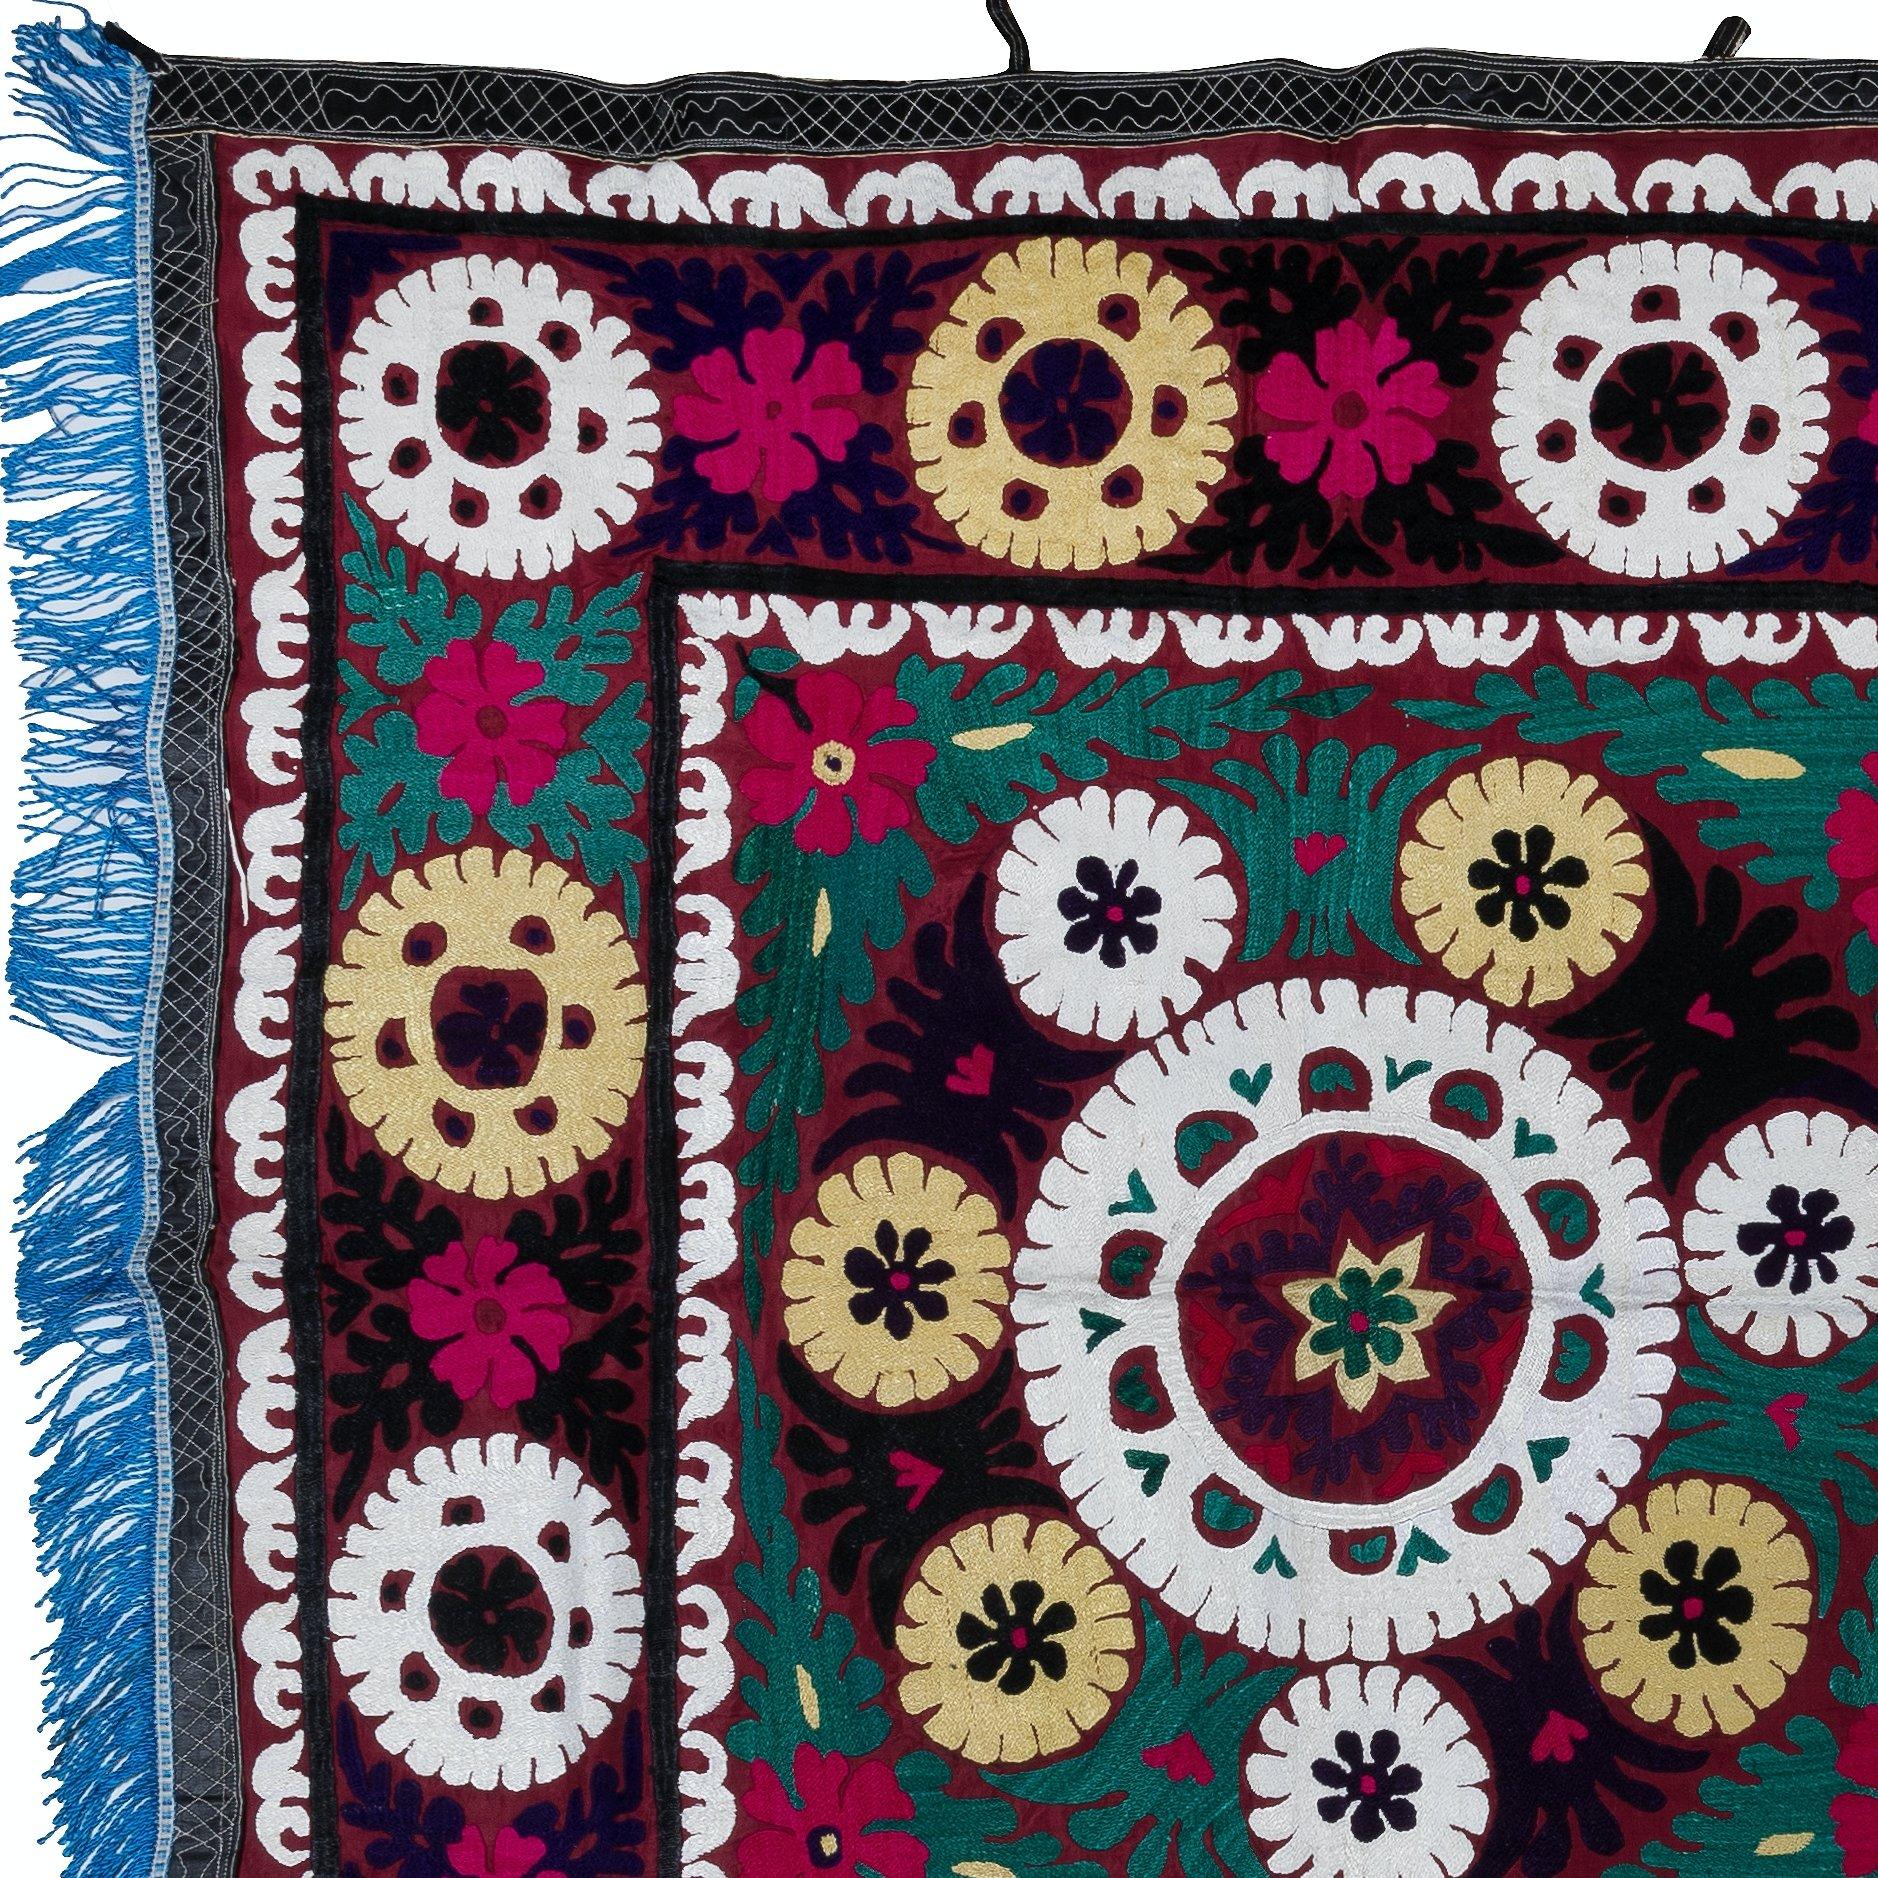 Tauchen Sie ein in die Welt der leuchtenden Farben und der aufwendigen Handwerkskunst mit unserem usbekischen Suzani Wandbehang oder Bettbezug aus handgestickter Seide. Dieses atemberaubende Stück ist perfekt, um Ihrer Einrichtung einen Hauch von